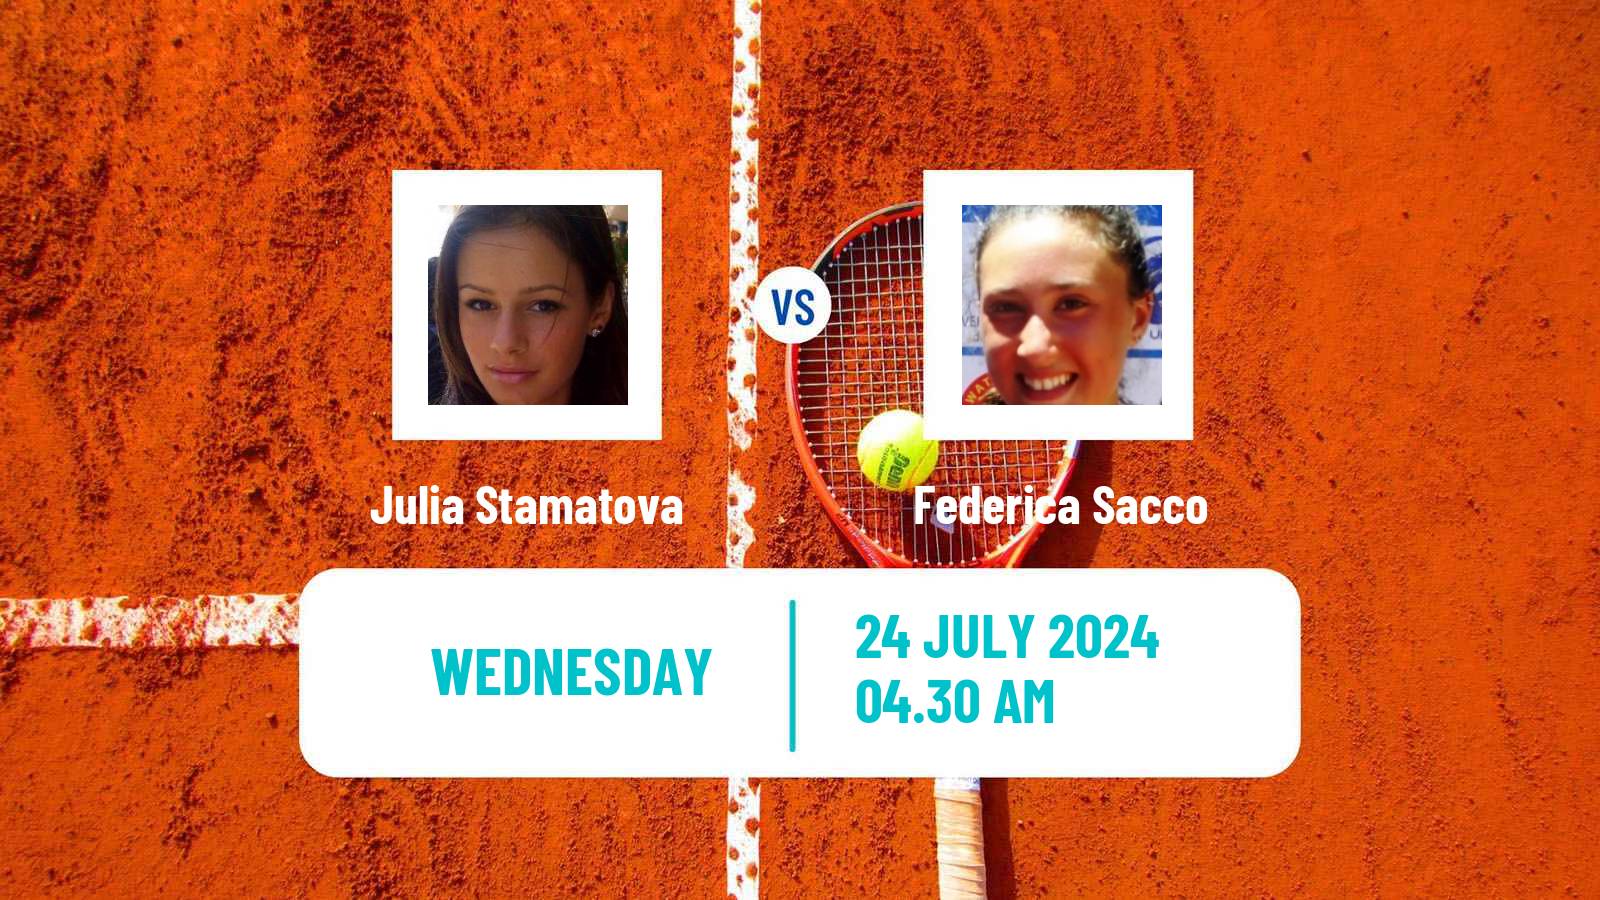 Tennis ITF W15 Kursumlijska Banja 13 Women Julia Stamatova - Federica Sacco